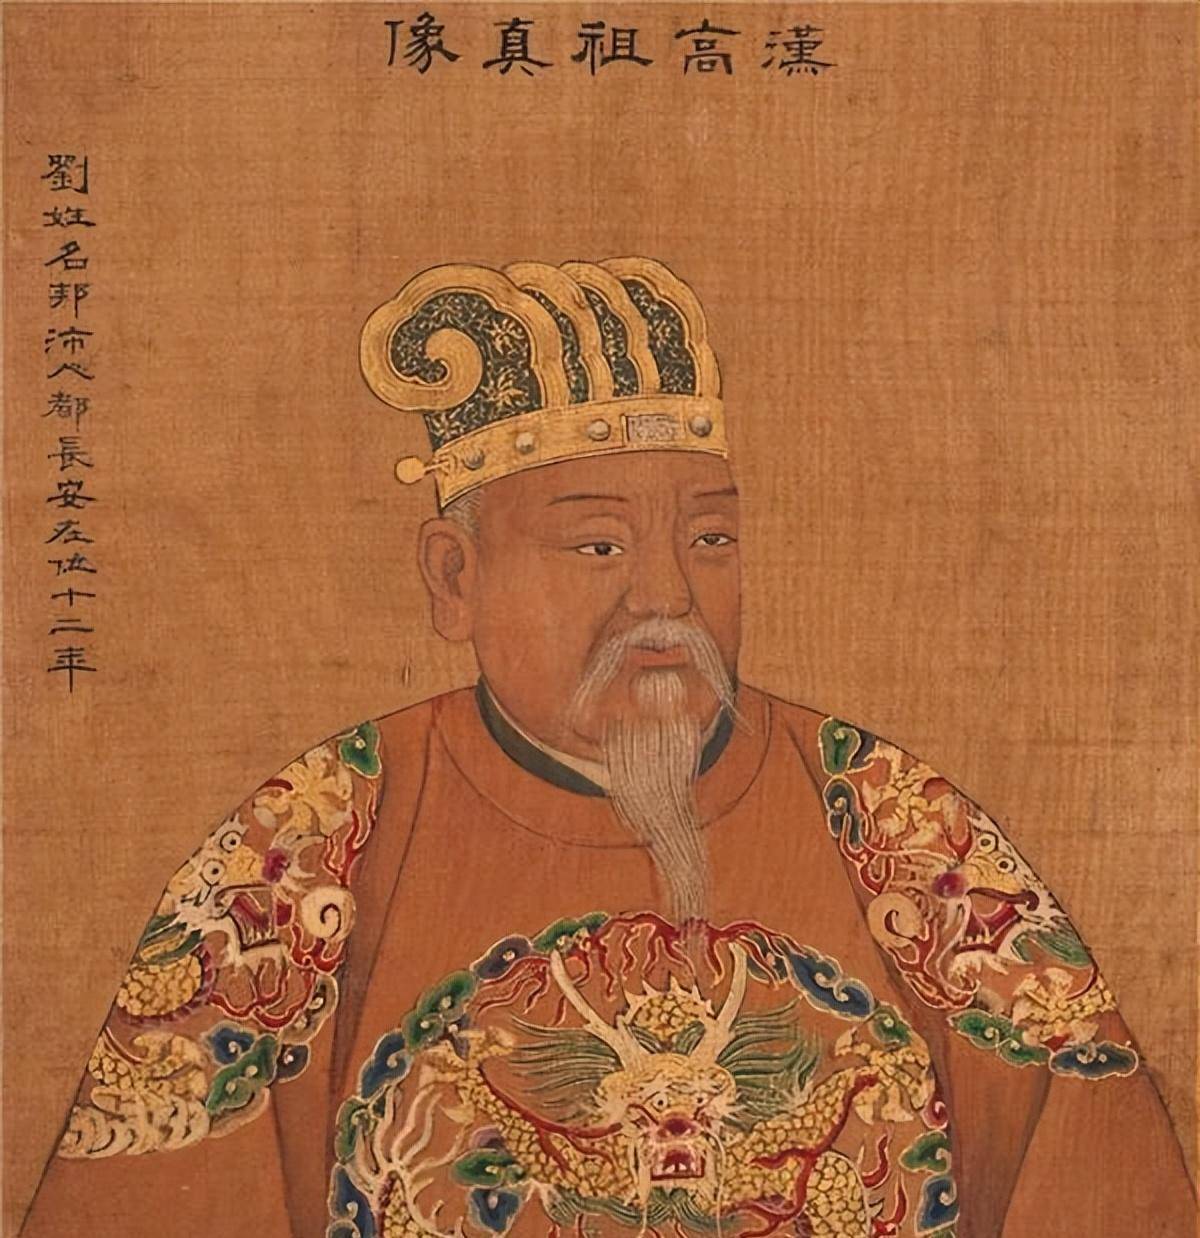 汉朝四百年,史记记载成传奇,刘秀是刘邦后裔,有一风流故事成就